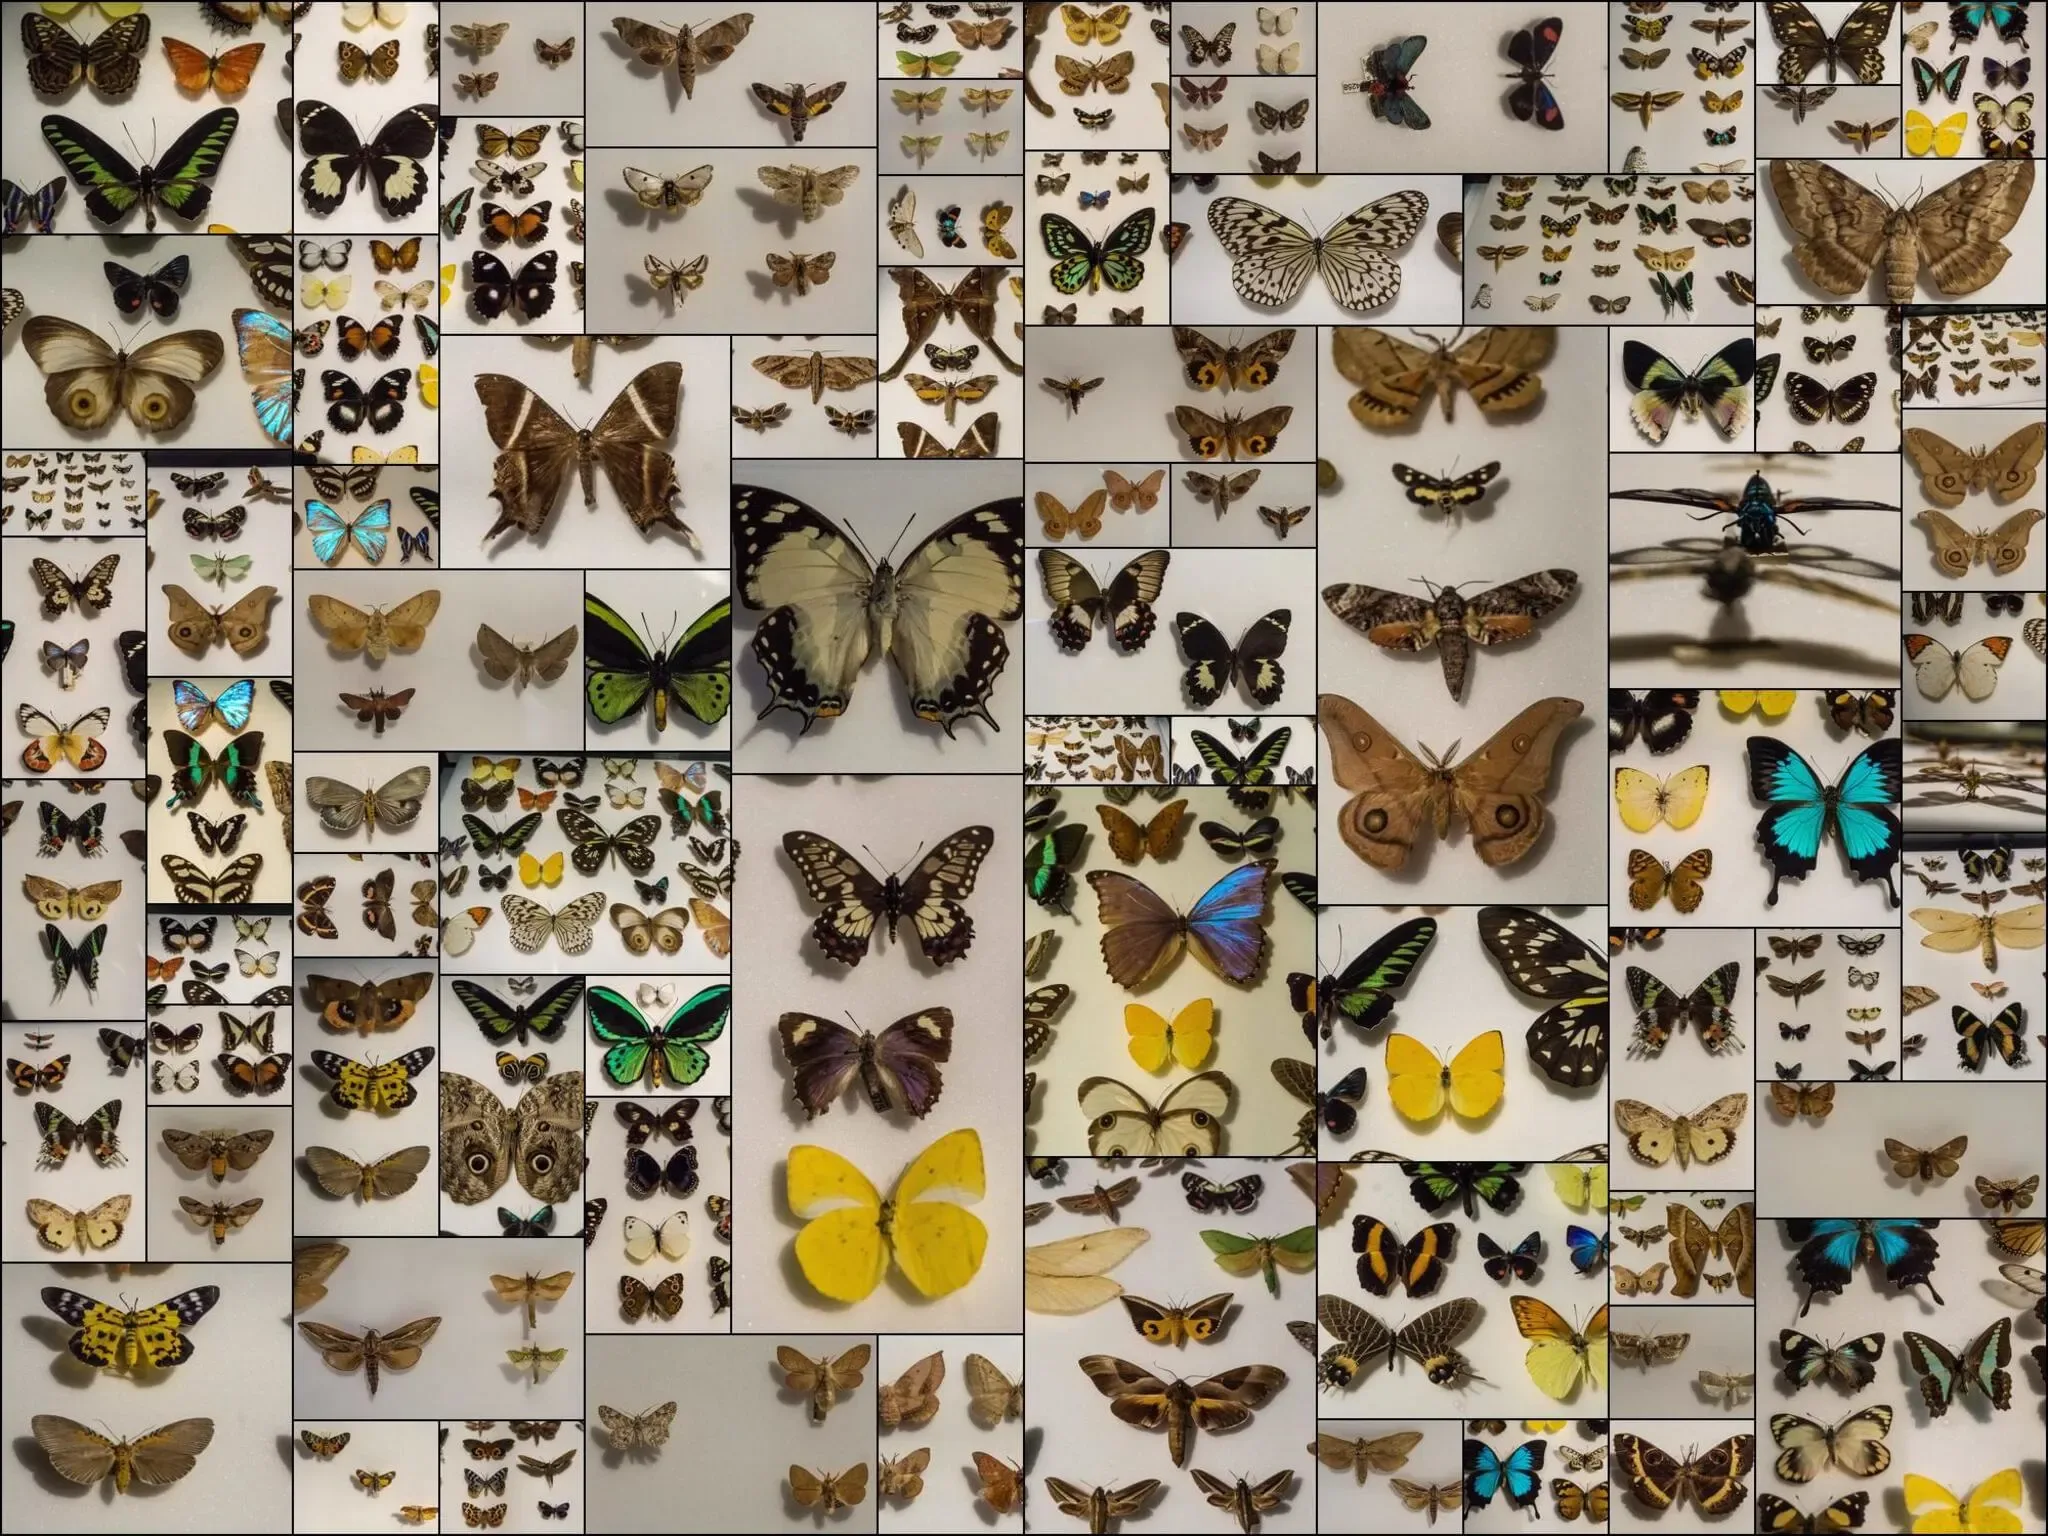 87 photos of Butterflies and Moths